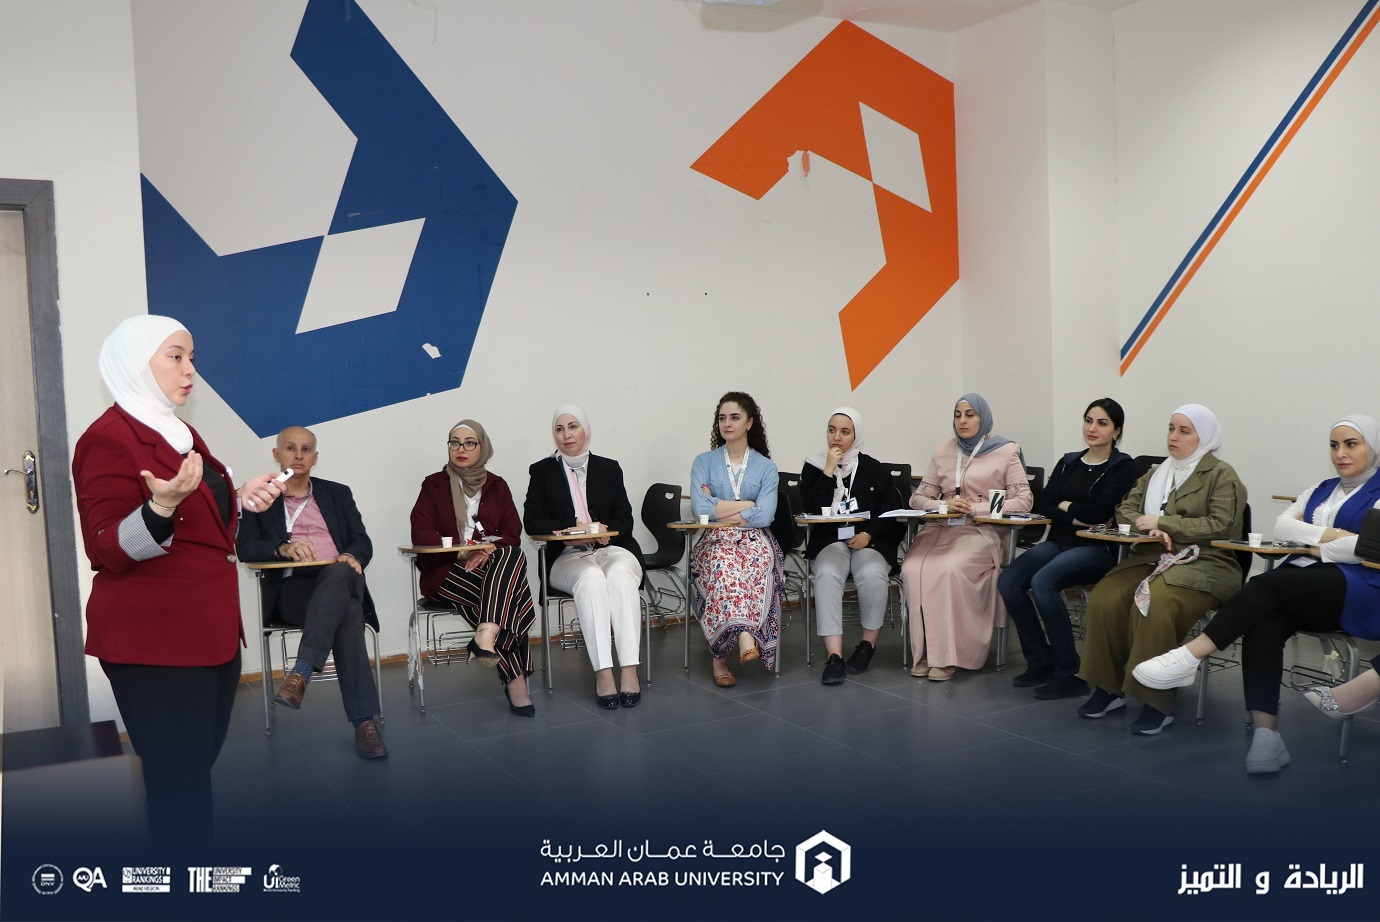 ورشة تدريبية في جامعة عمان العربية بعنوان "براءات الاختراع والملكية الفكرية"